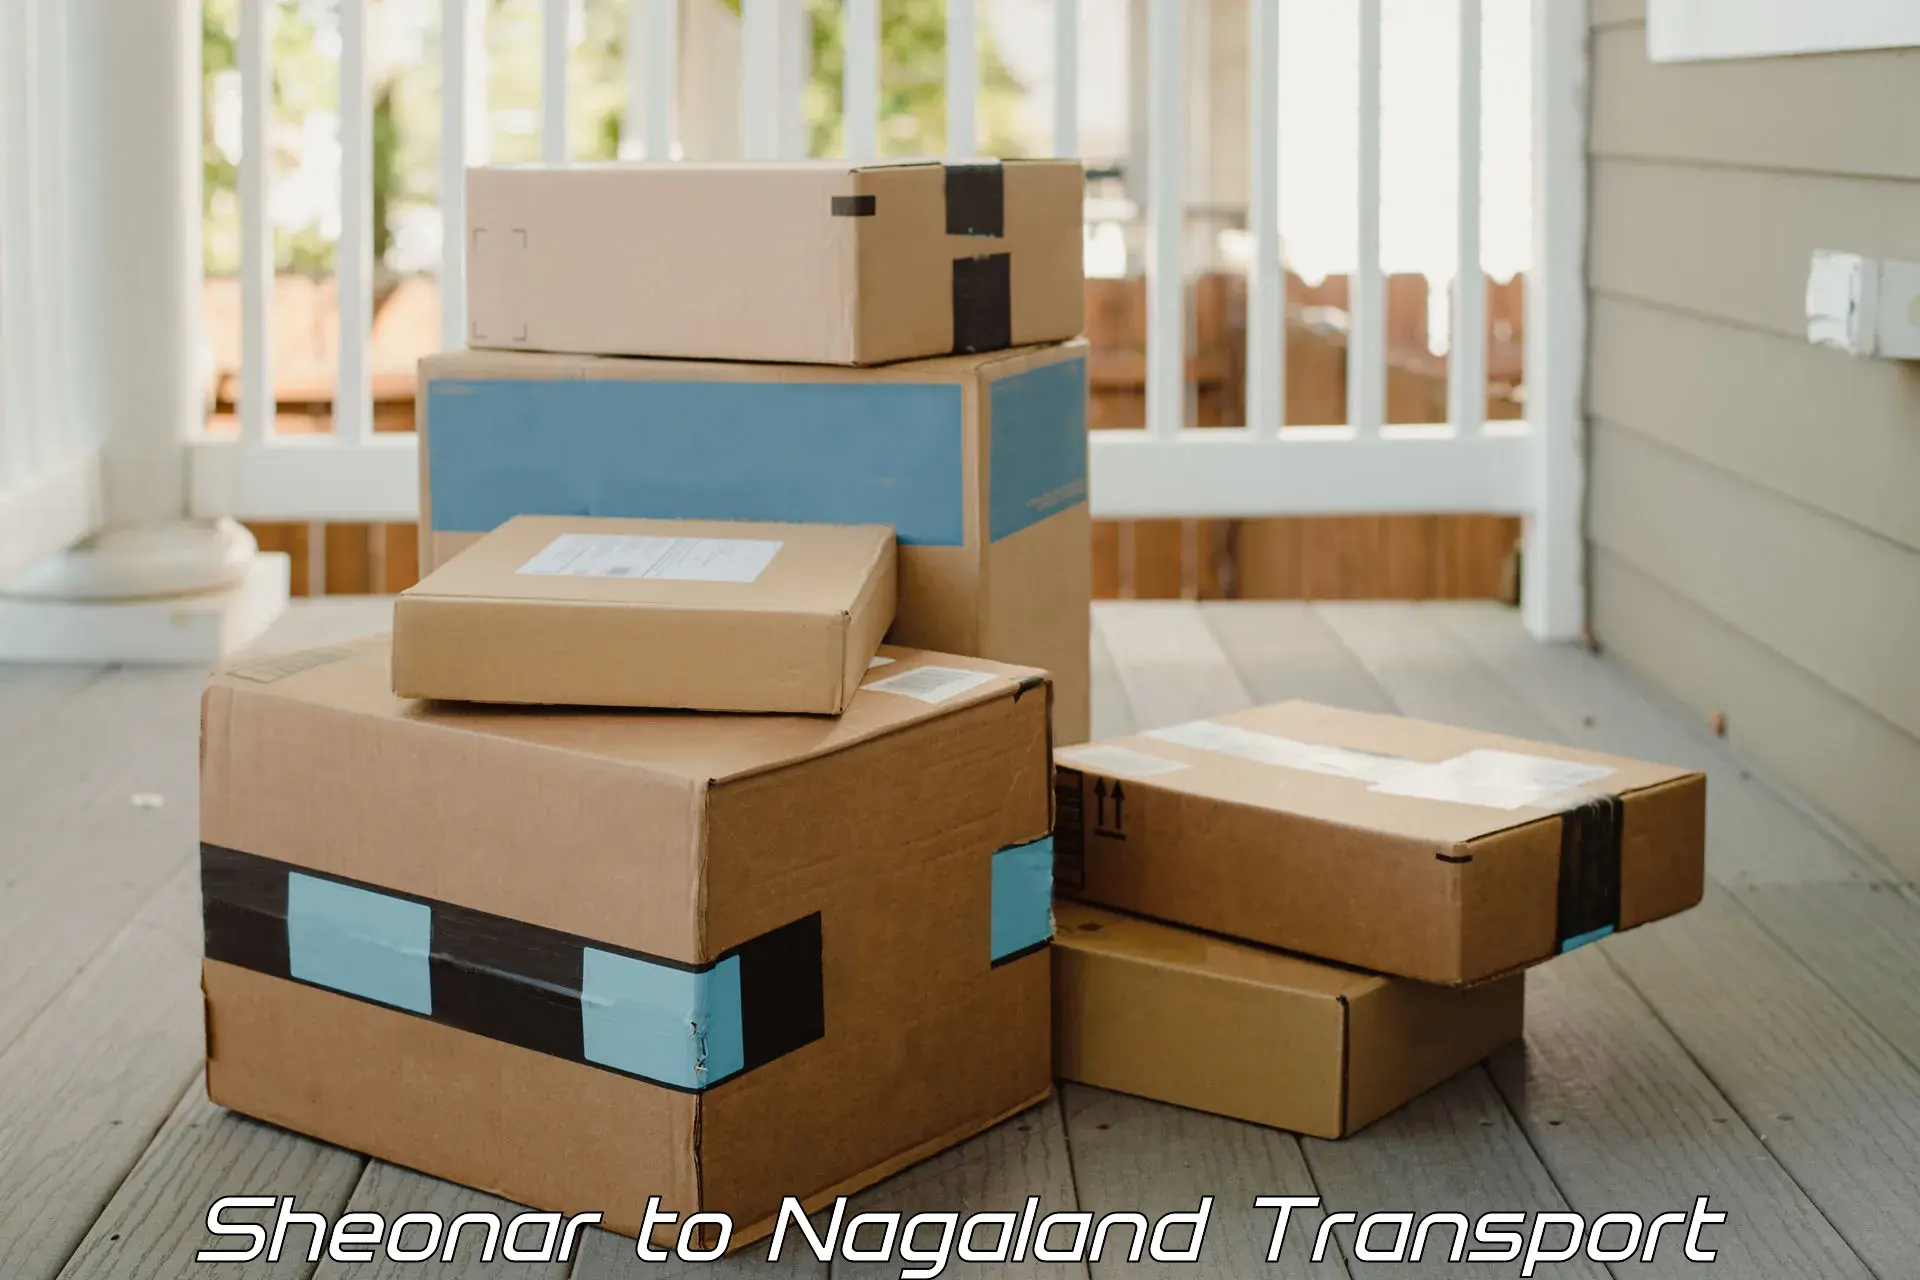 Road transport online services Sheonar to NIT Nagaland